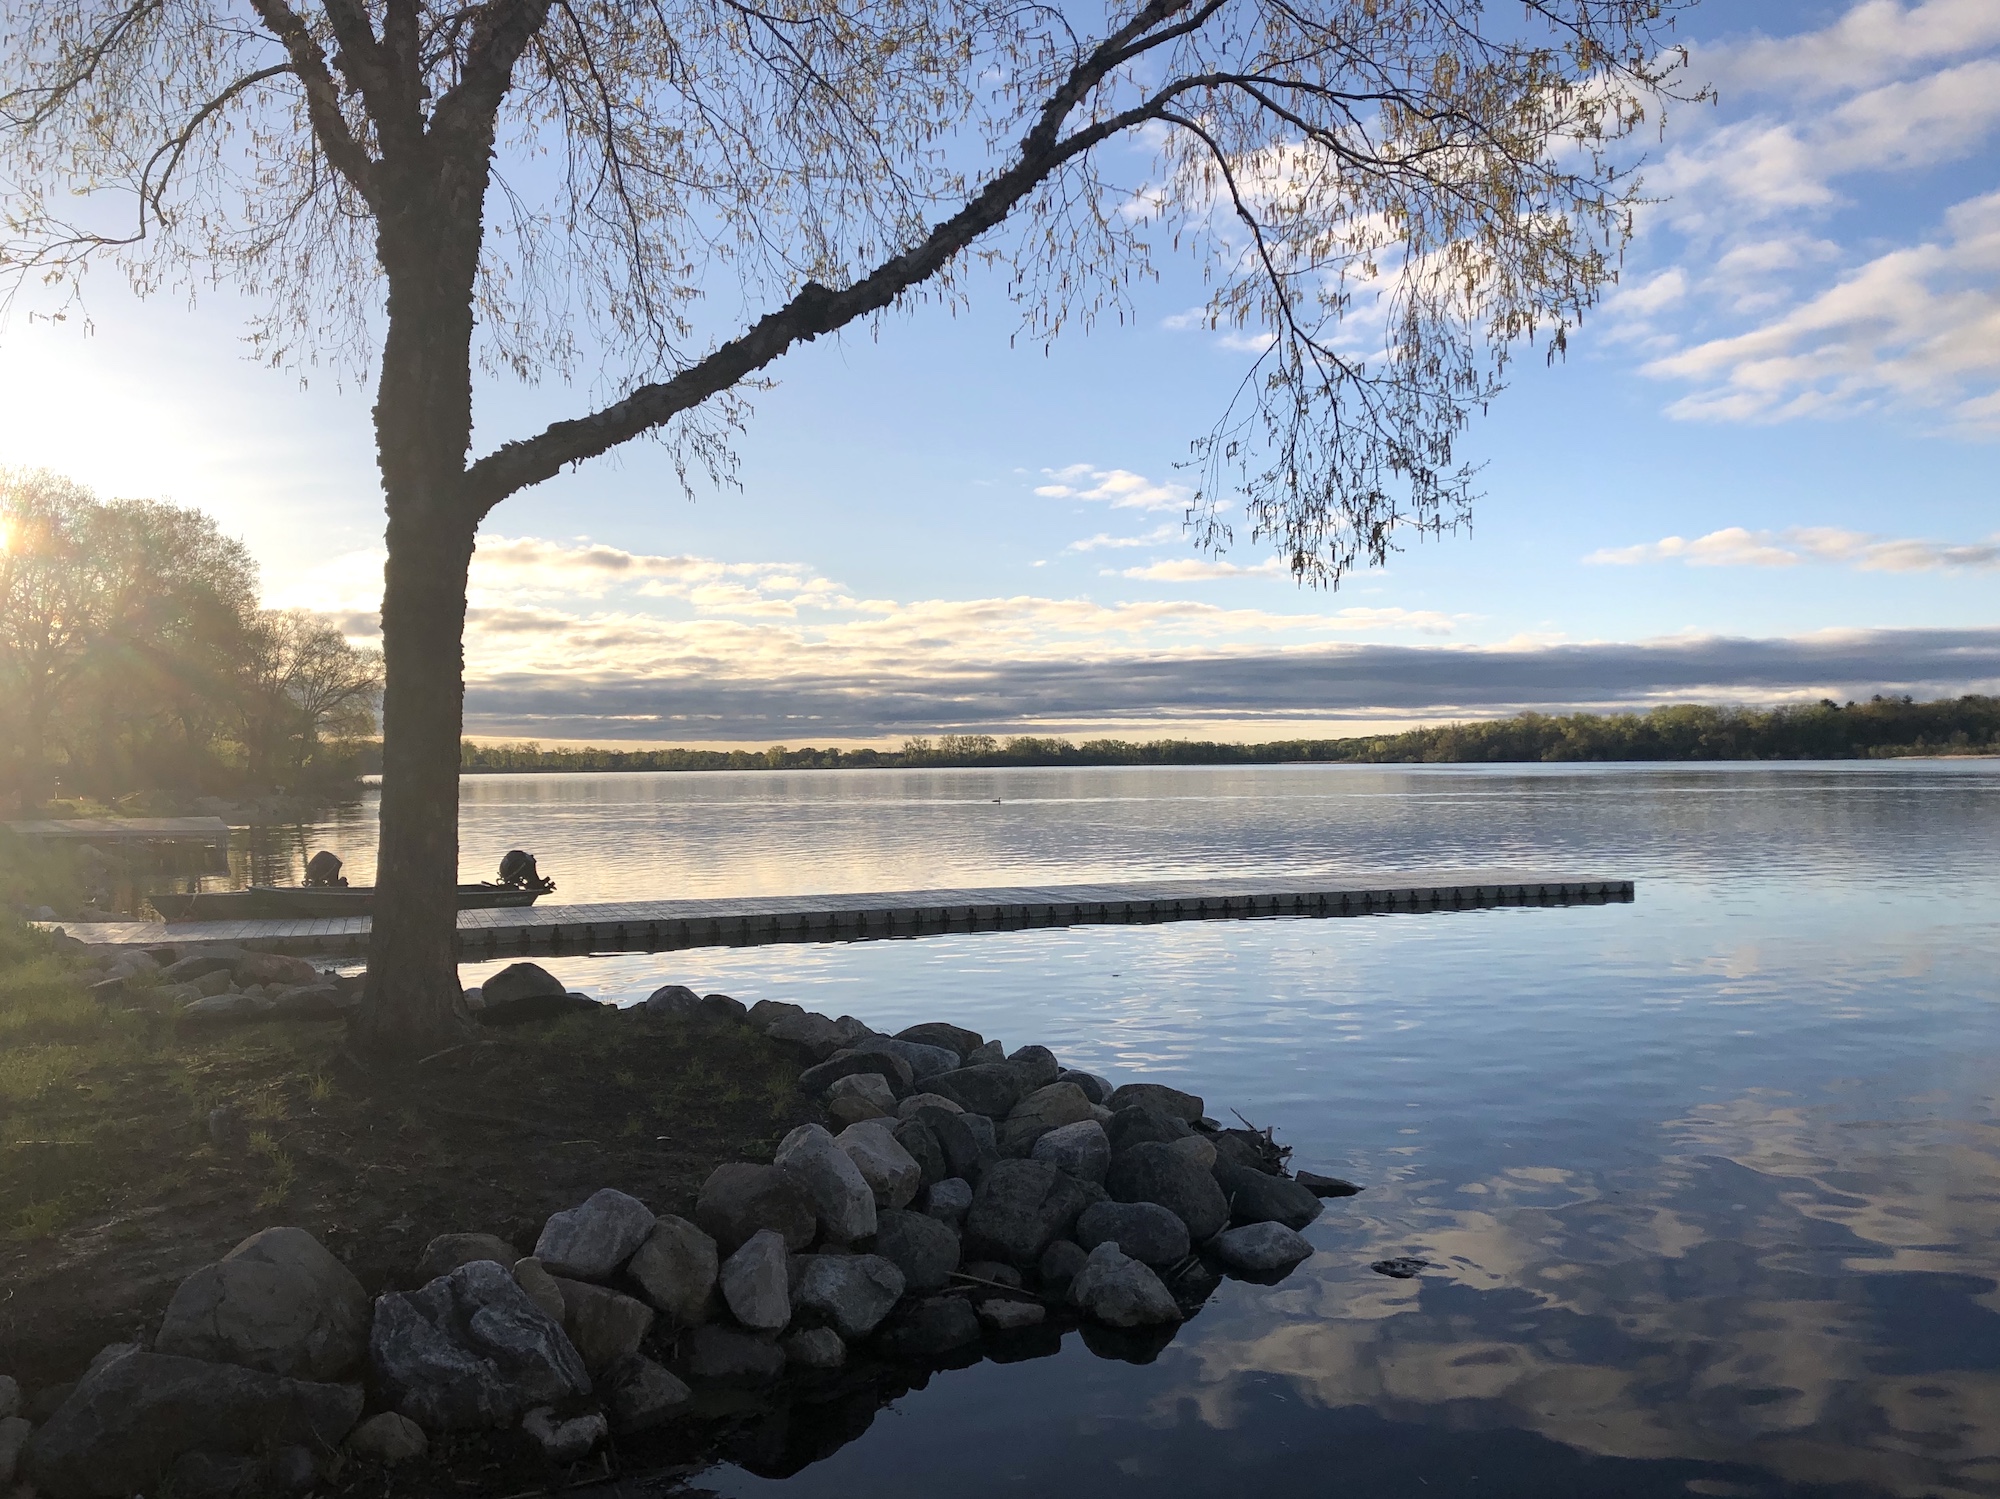 Lake Wingra on May 10, 2019.